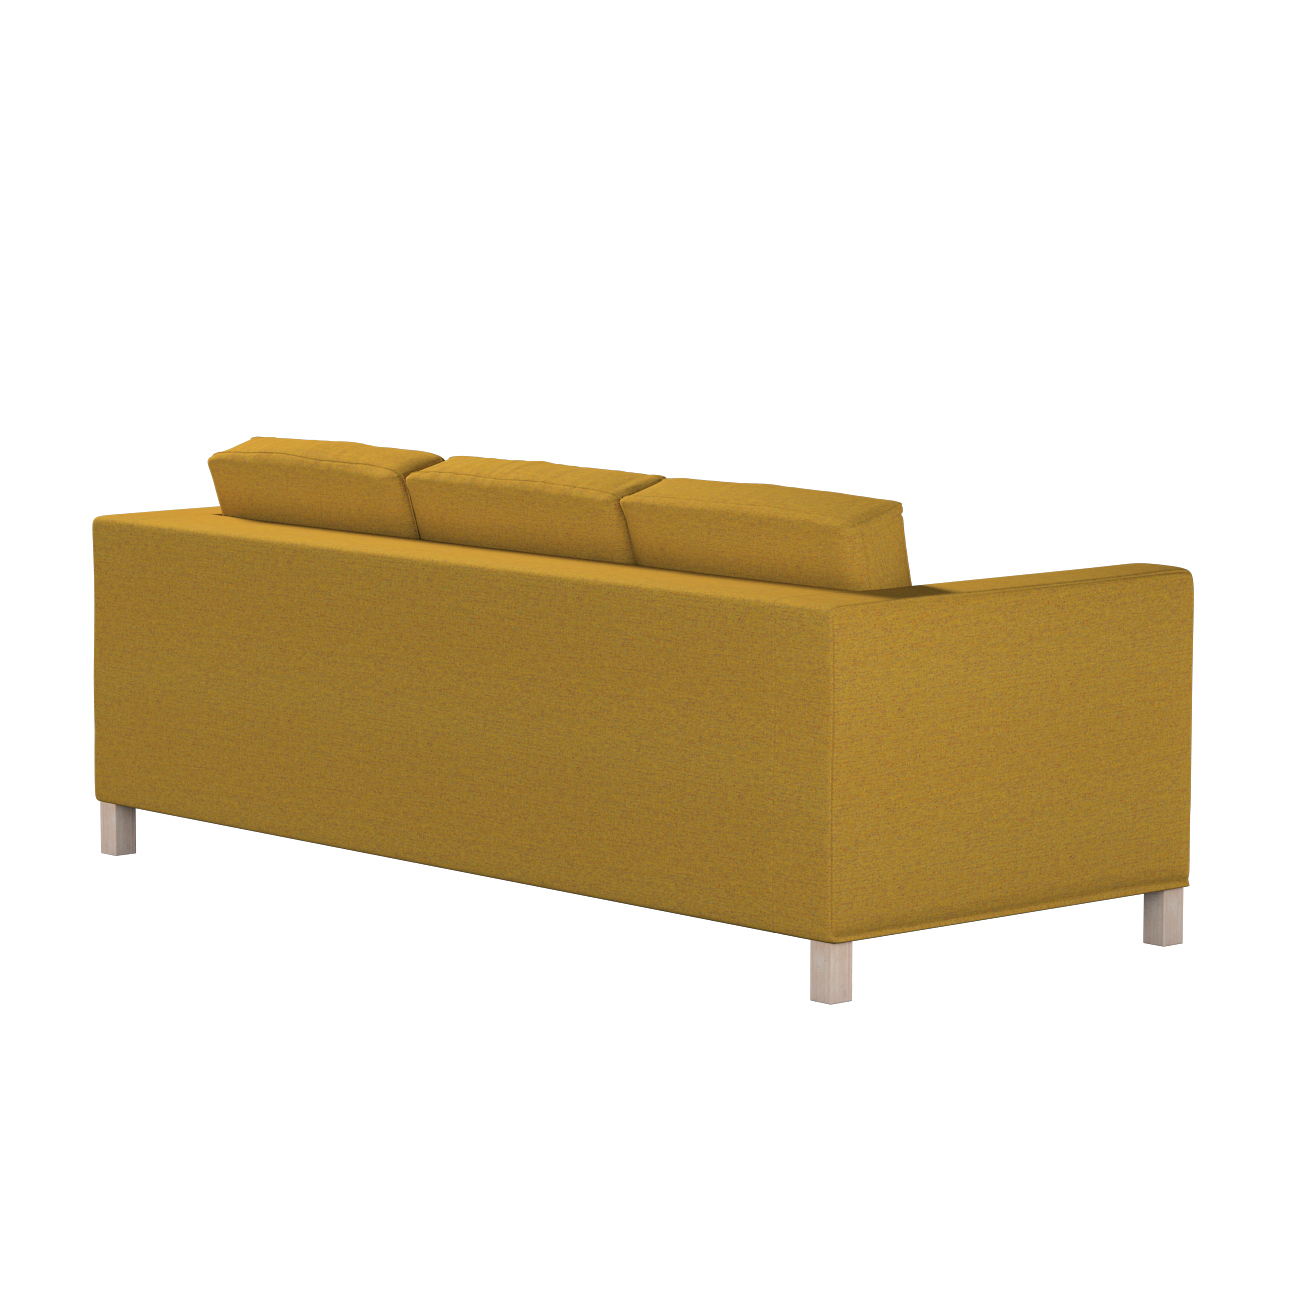 Bezug für Karlanda 3-Sitzer Sofa nicht ausklappbar, kurz, gelb, Bezug für K günstig online kaufen